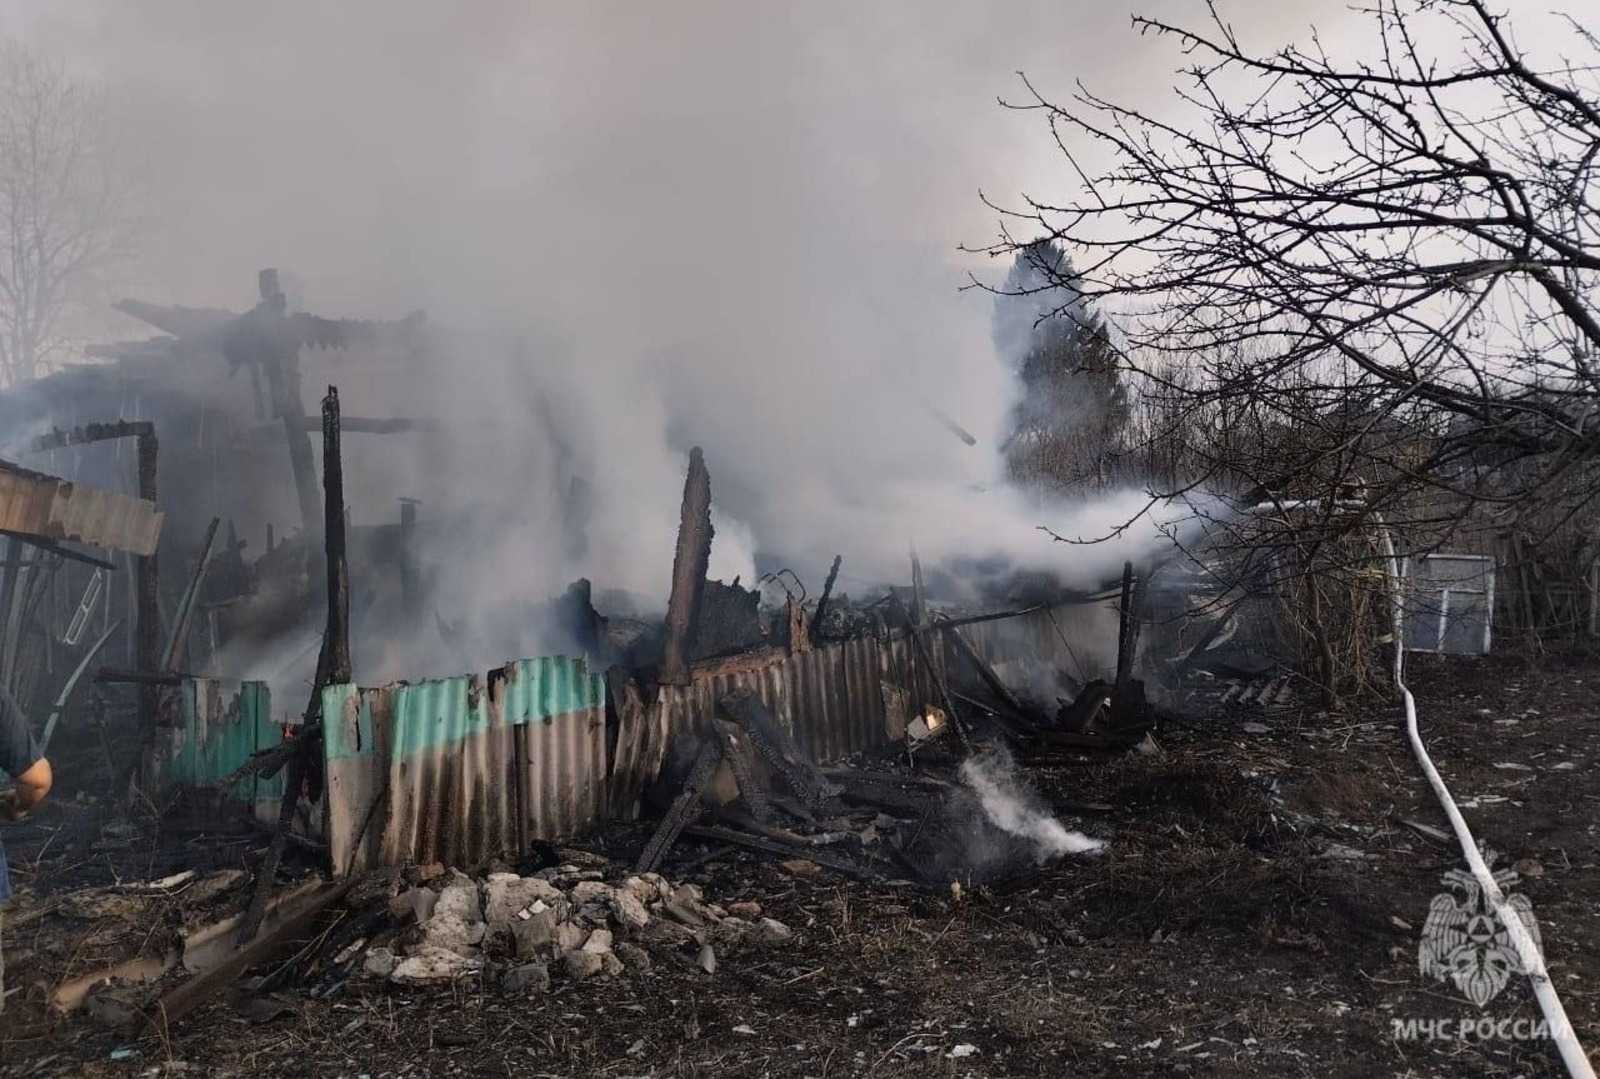 При пожаре в частном доме в Башкирии сильно обгорел мужчина